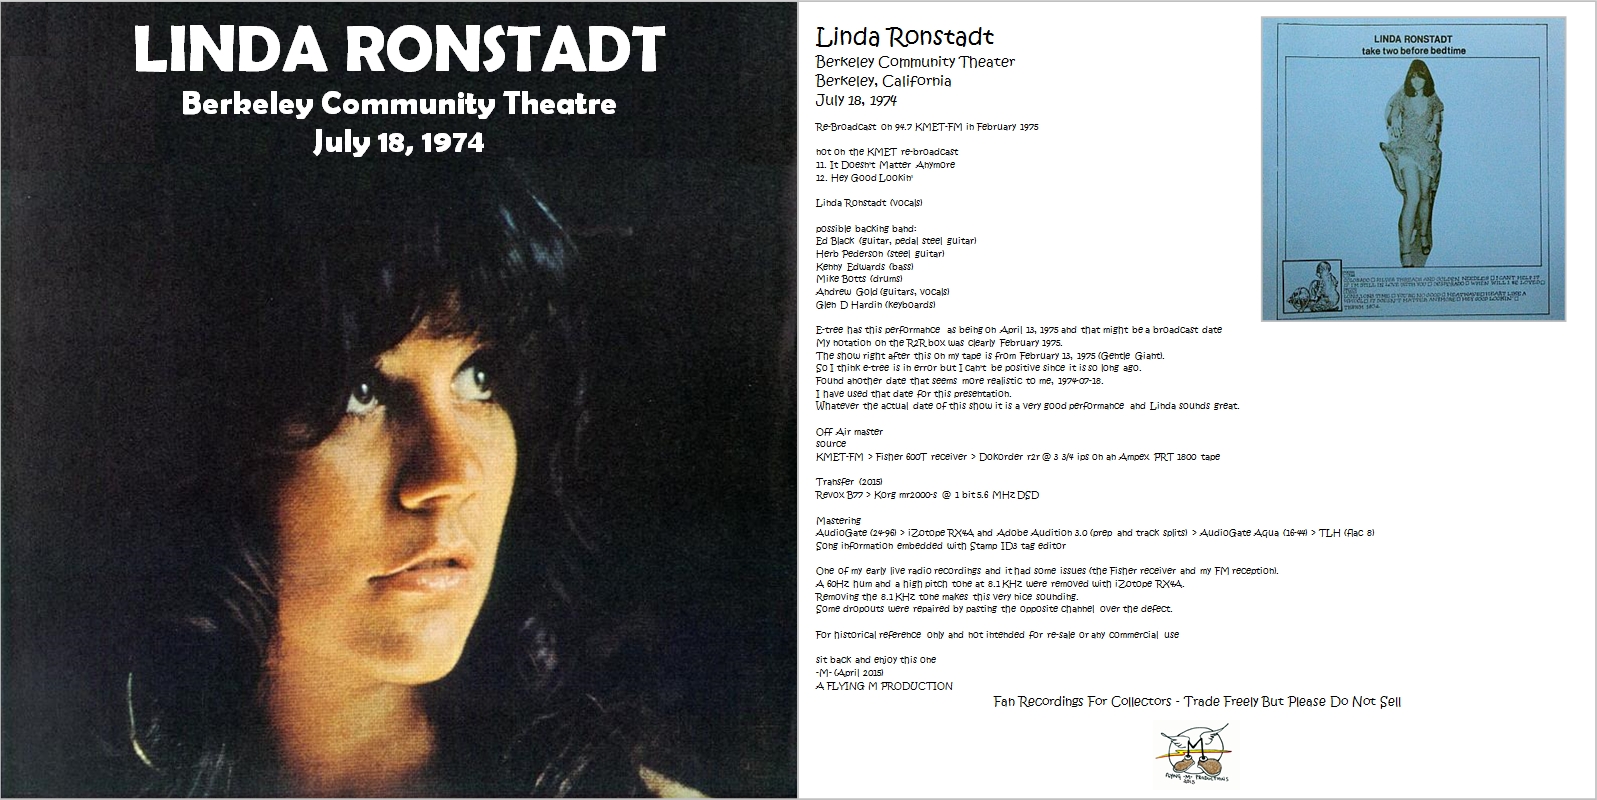 LindaRonstadt1974-07-18BerkeleyCommunityTheaterCA (2).JPG